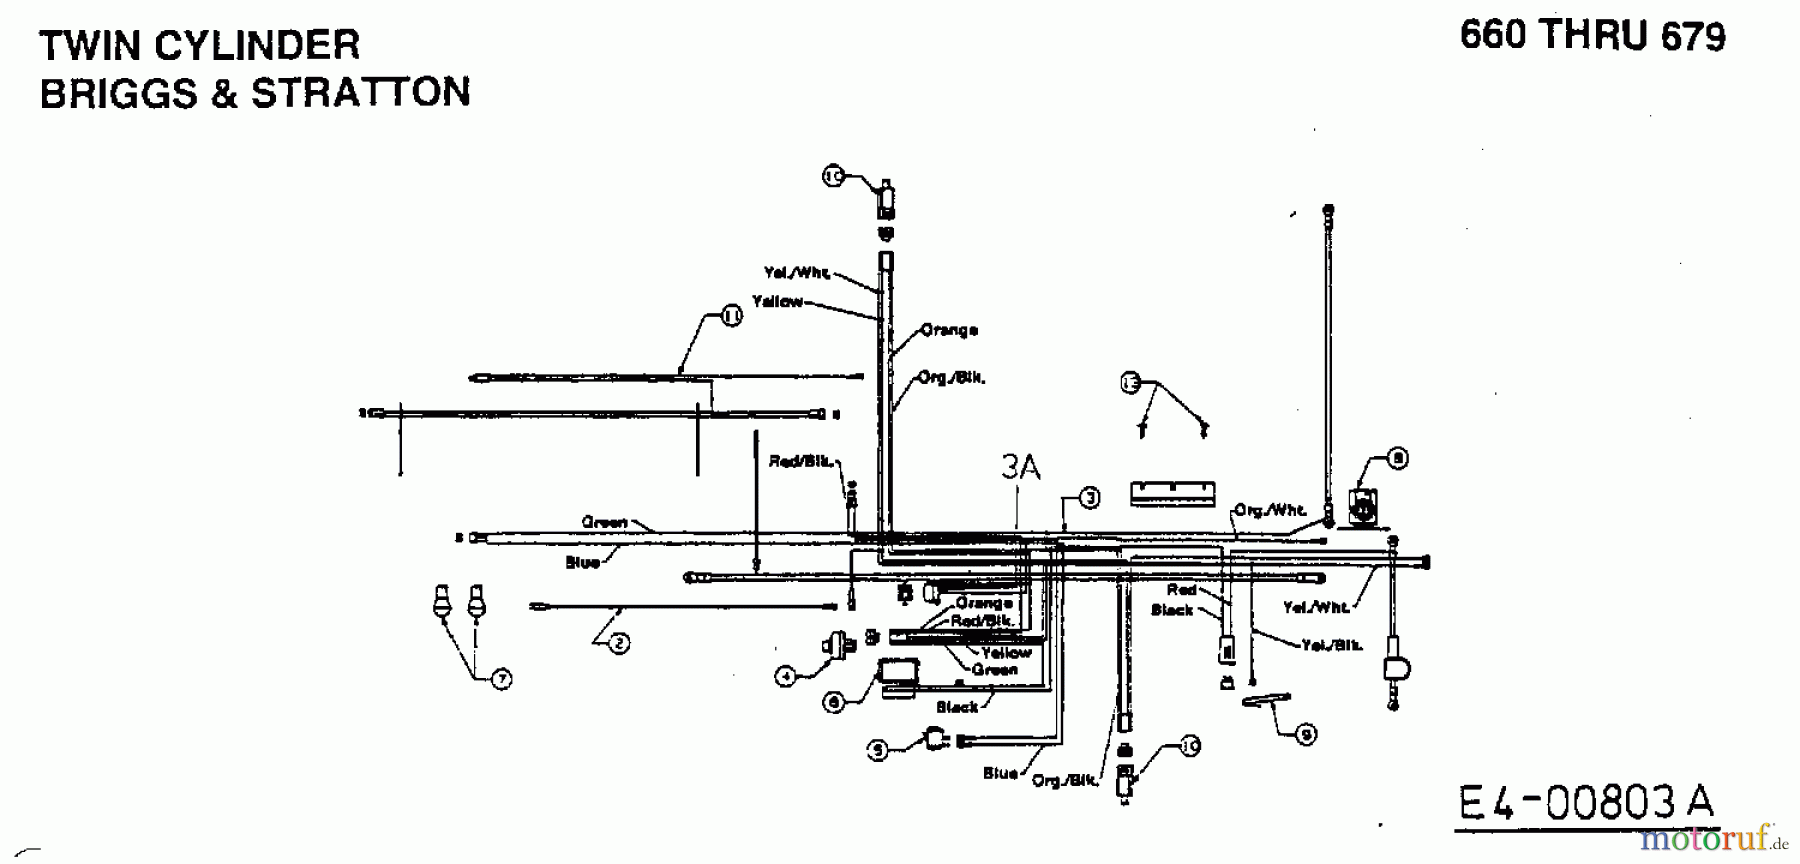  MTD Rasentraktoren H 125 13AH690F678  (1998) Schaltplan 2 Zylinder